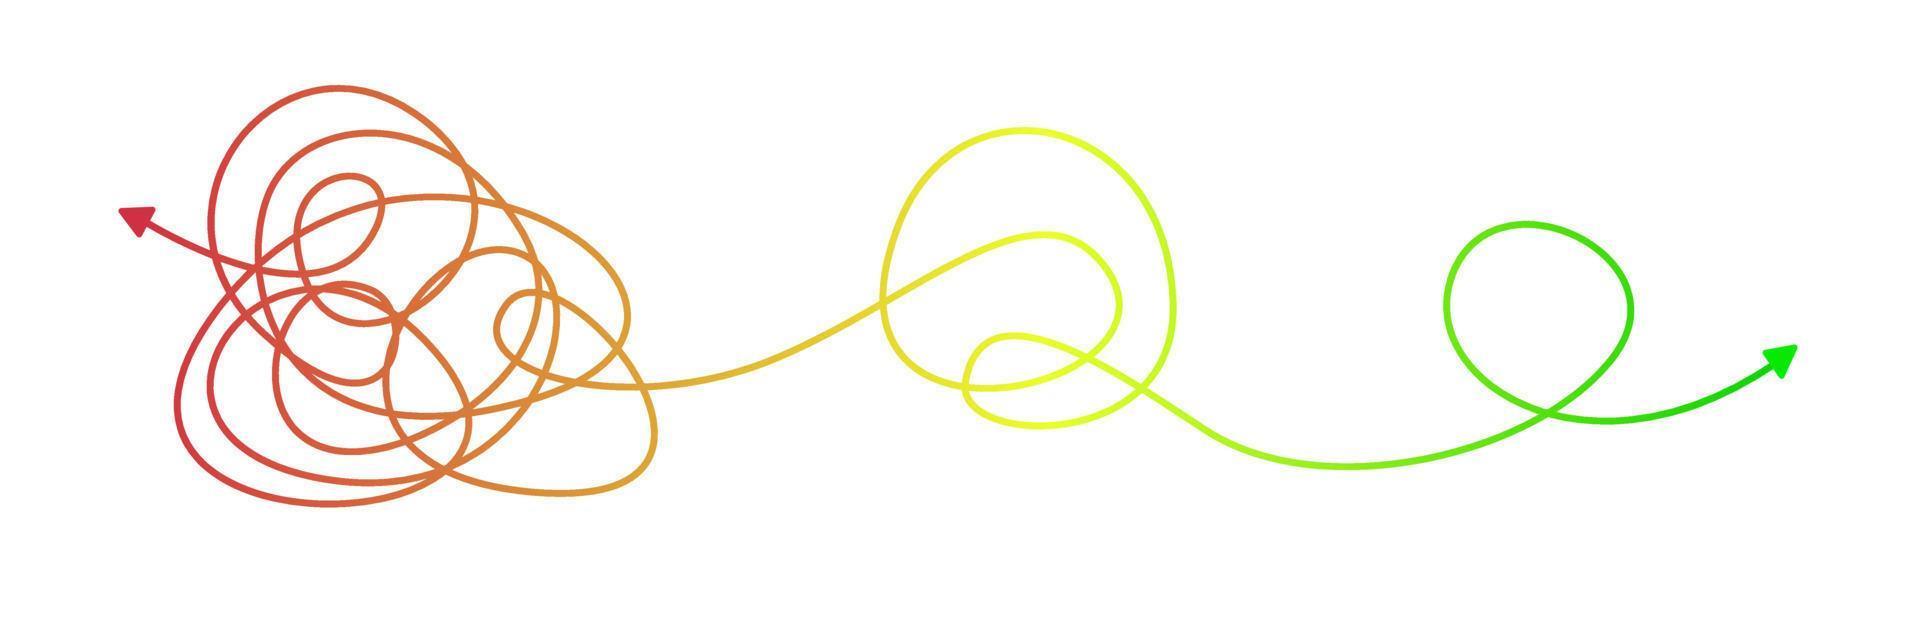 kaos lösning. tilltrasslad linje sväng in i hetero linje som en begrepp av kaos lösning. vektor illustration